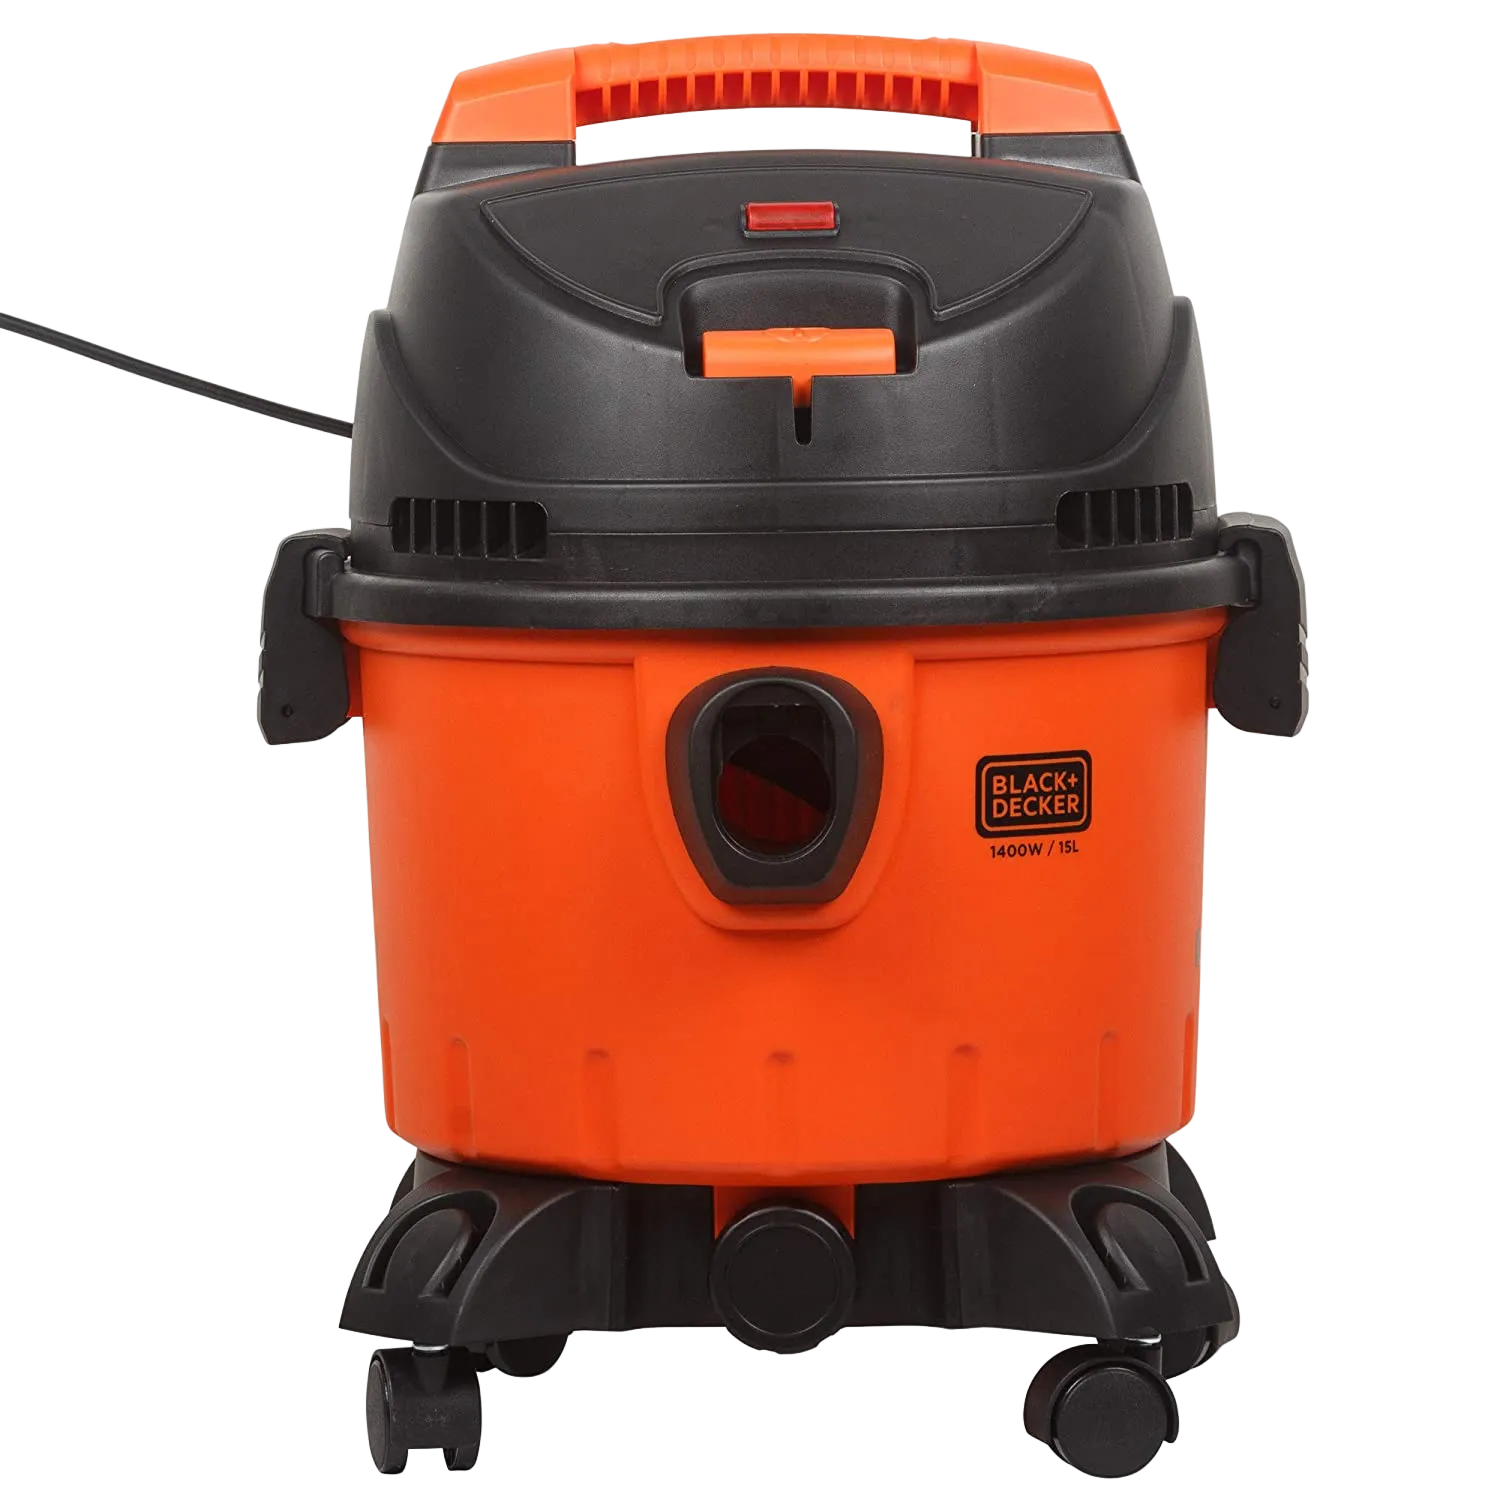 Black+Decker Drum Vacuum Cleaner With Wet And Dry Function 1400W WDBD15-B5 Orange/Black